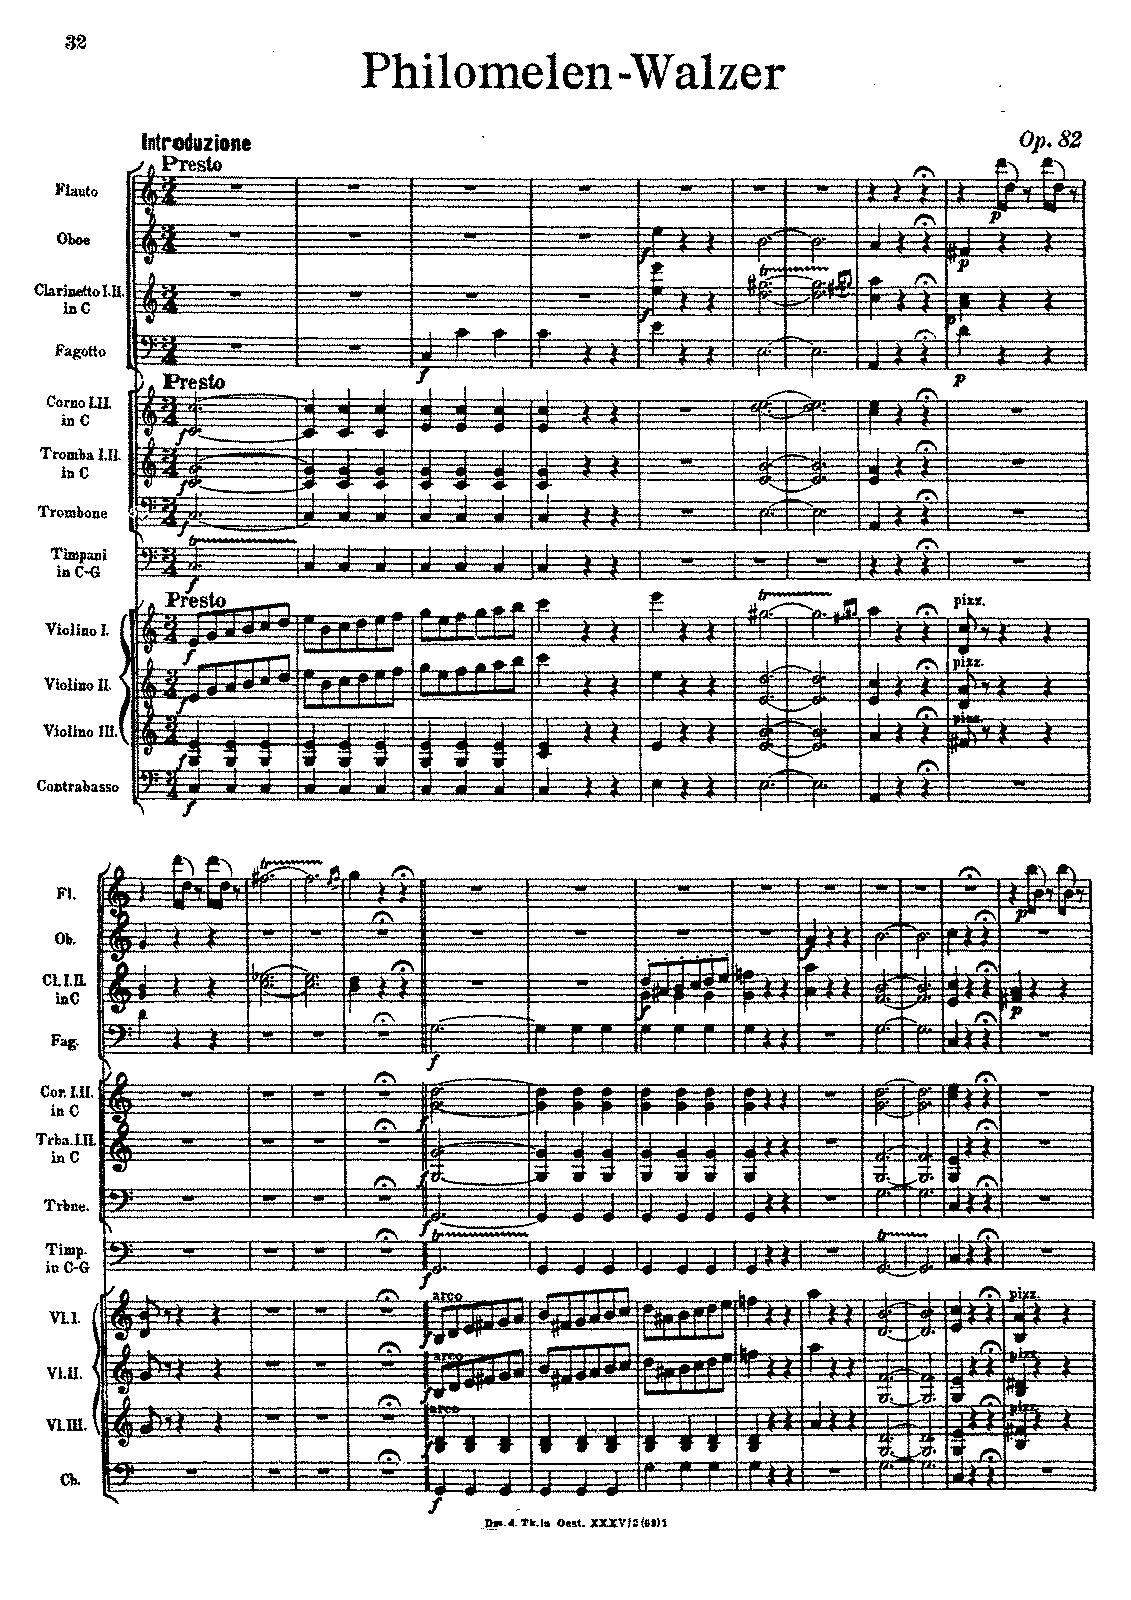 Philomelen-Walzer, Op.82 (Strauss Sr., Johann) - IMSLP